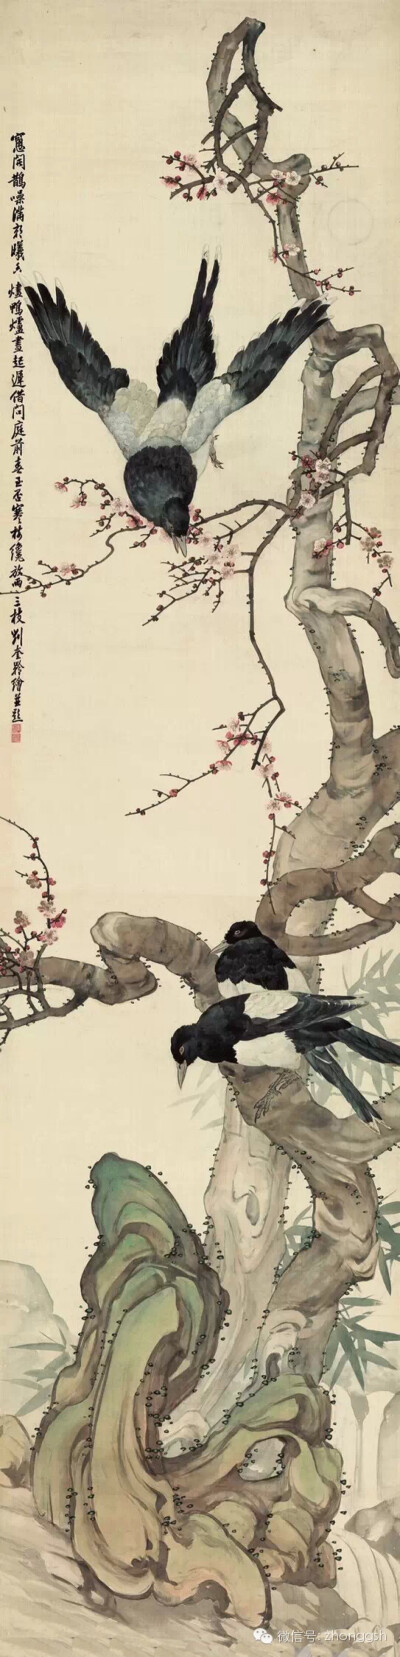  刘奎龄（1885─1967），字耀辰，号蝶隐，自署种墨草庐主人。中国近现代美术史开派巨匠，动物画一代宗师，被誉为“全能画家”，能工善写，擅长动物、植物、人物画及山水画，他描摹的动物种类之多，范围之广至…